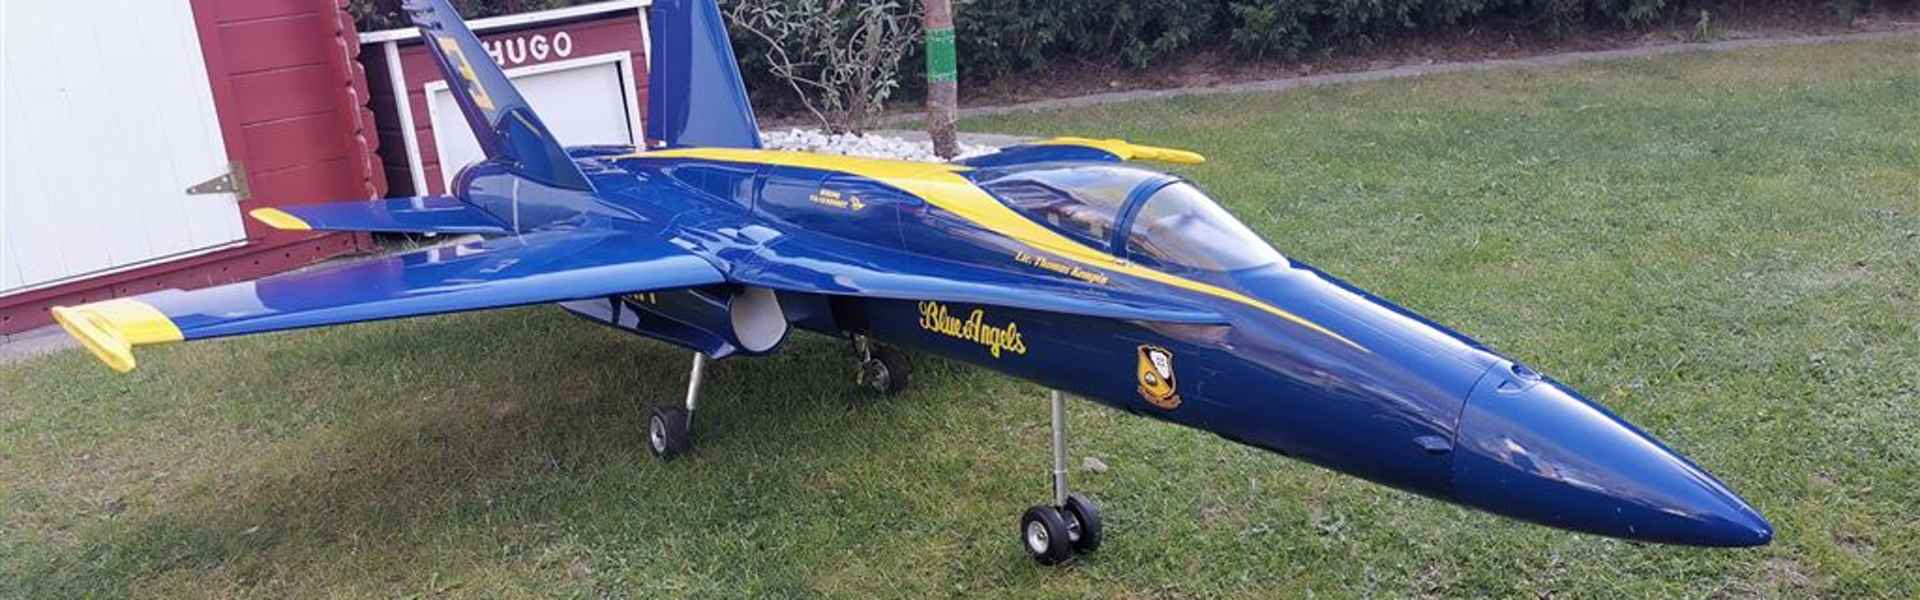 Jet Modellflugzeug F18 Hornet Blue Angles